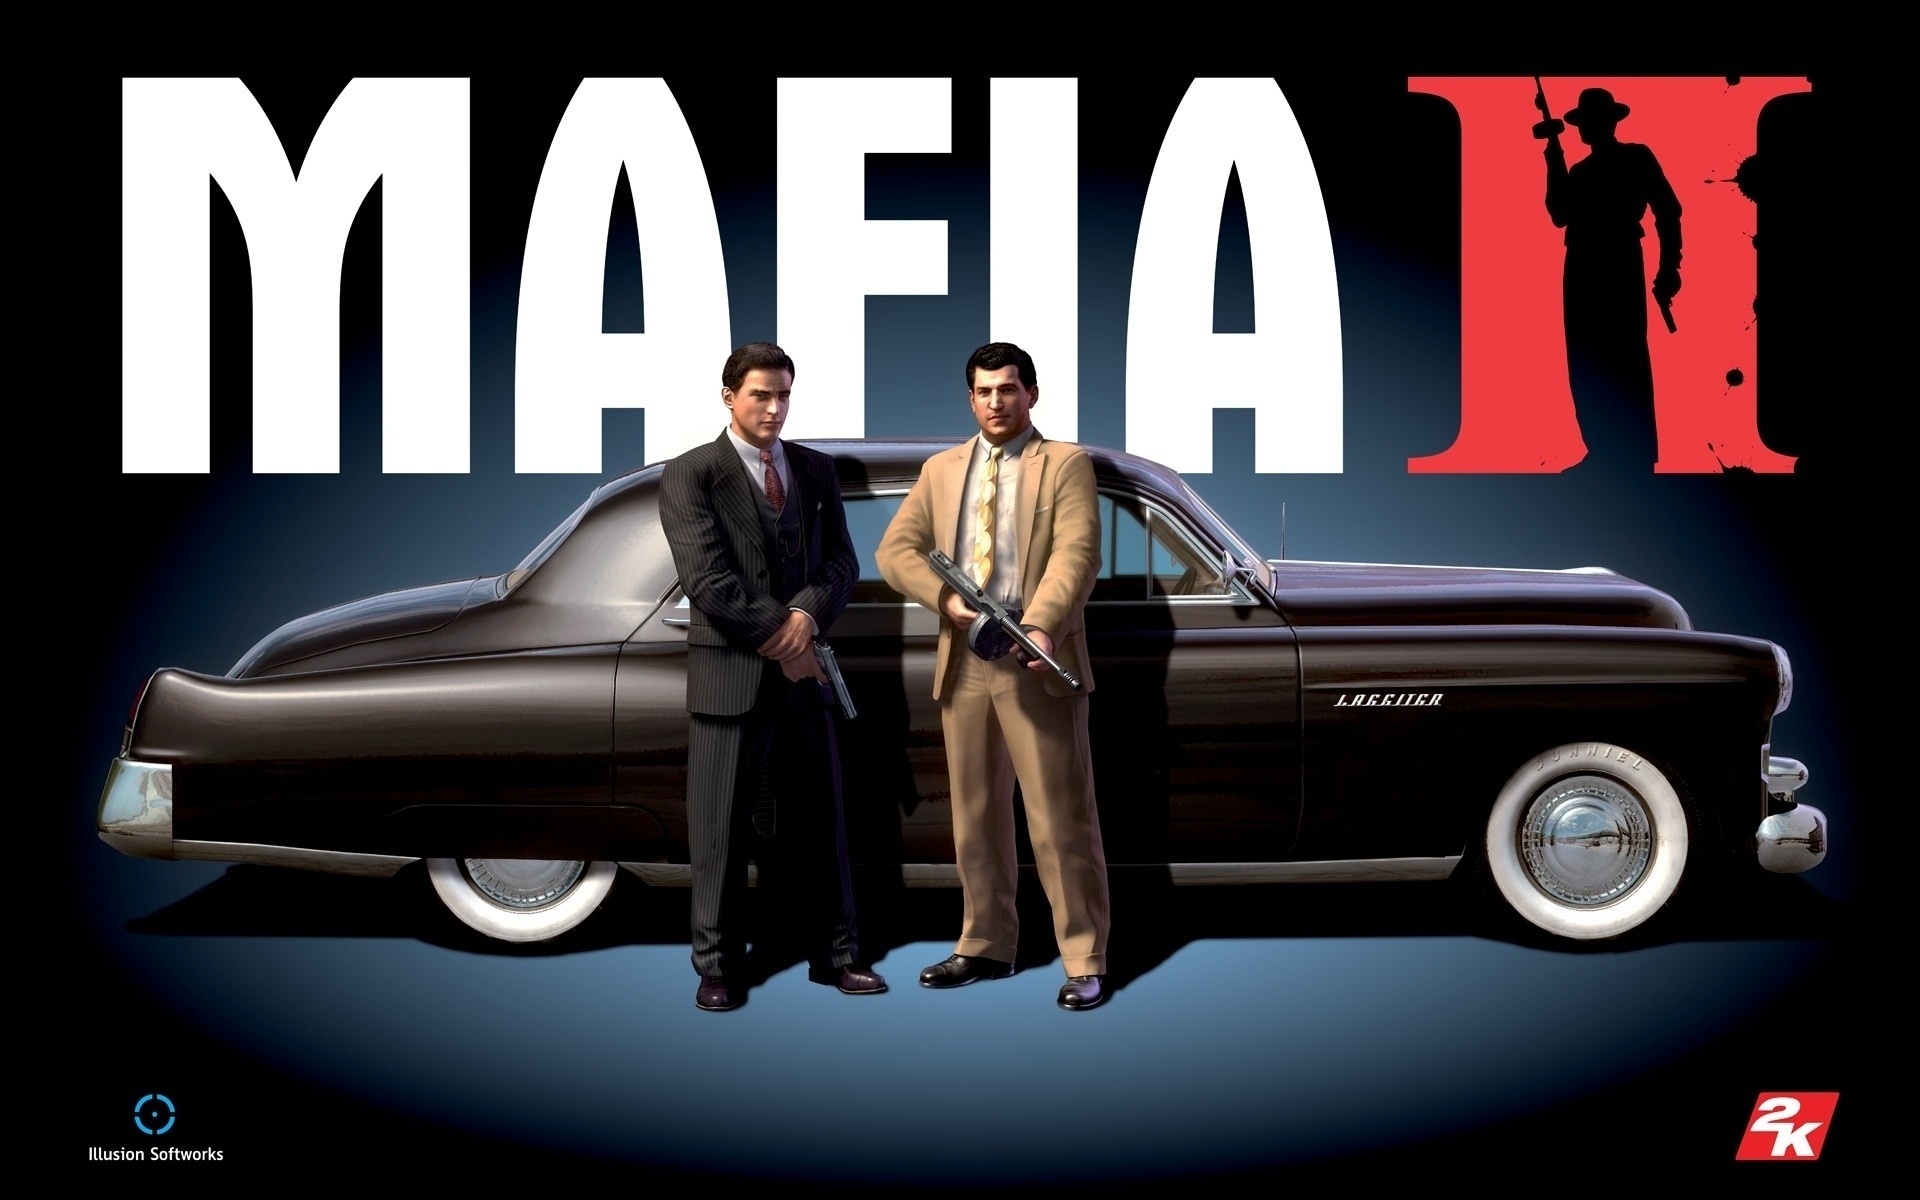 Mafia ii on steam фото 96